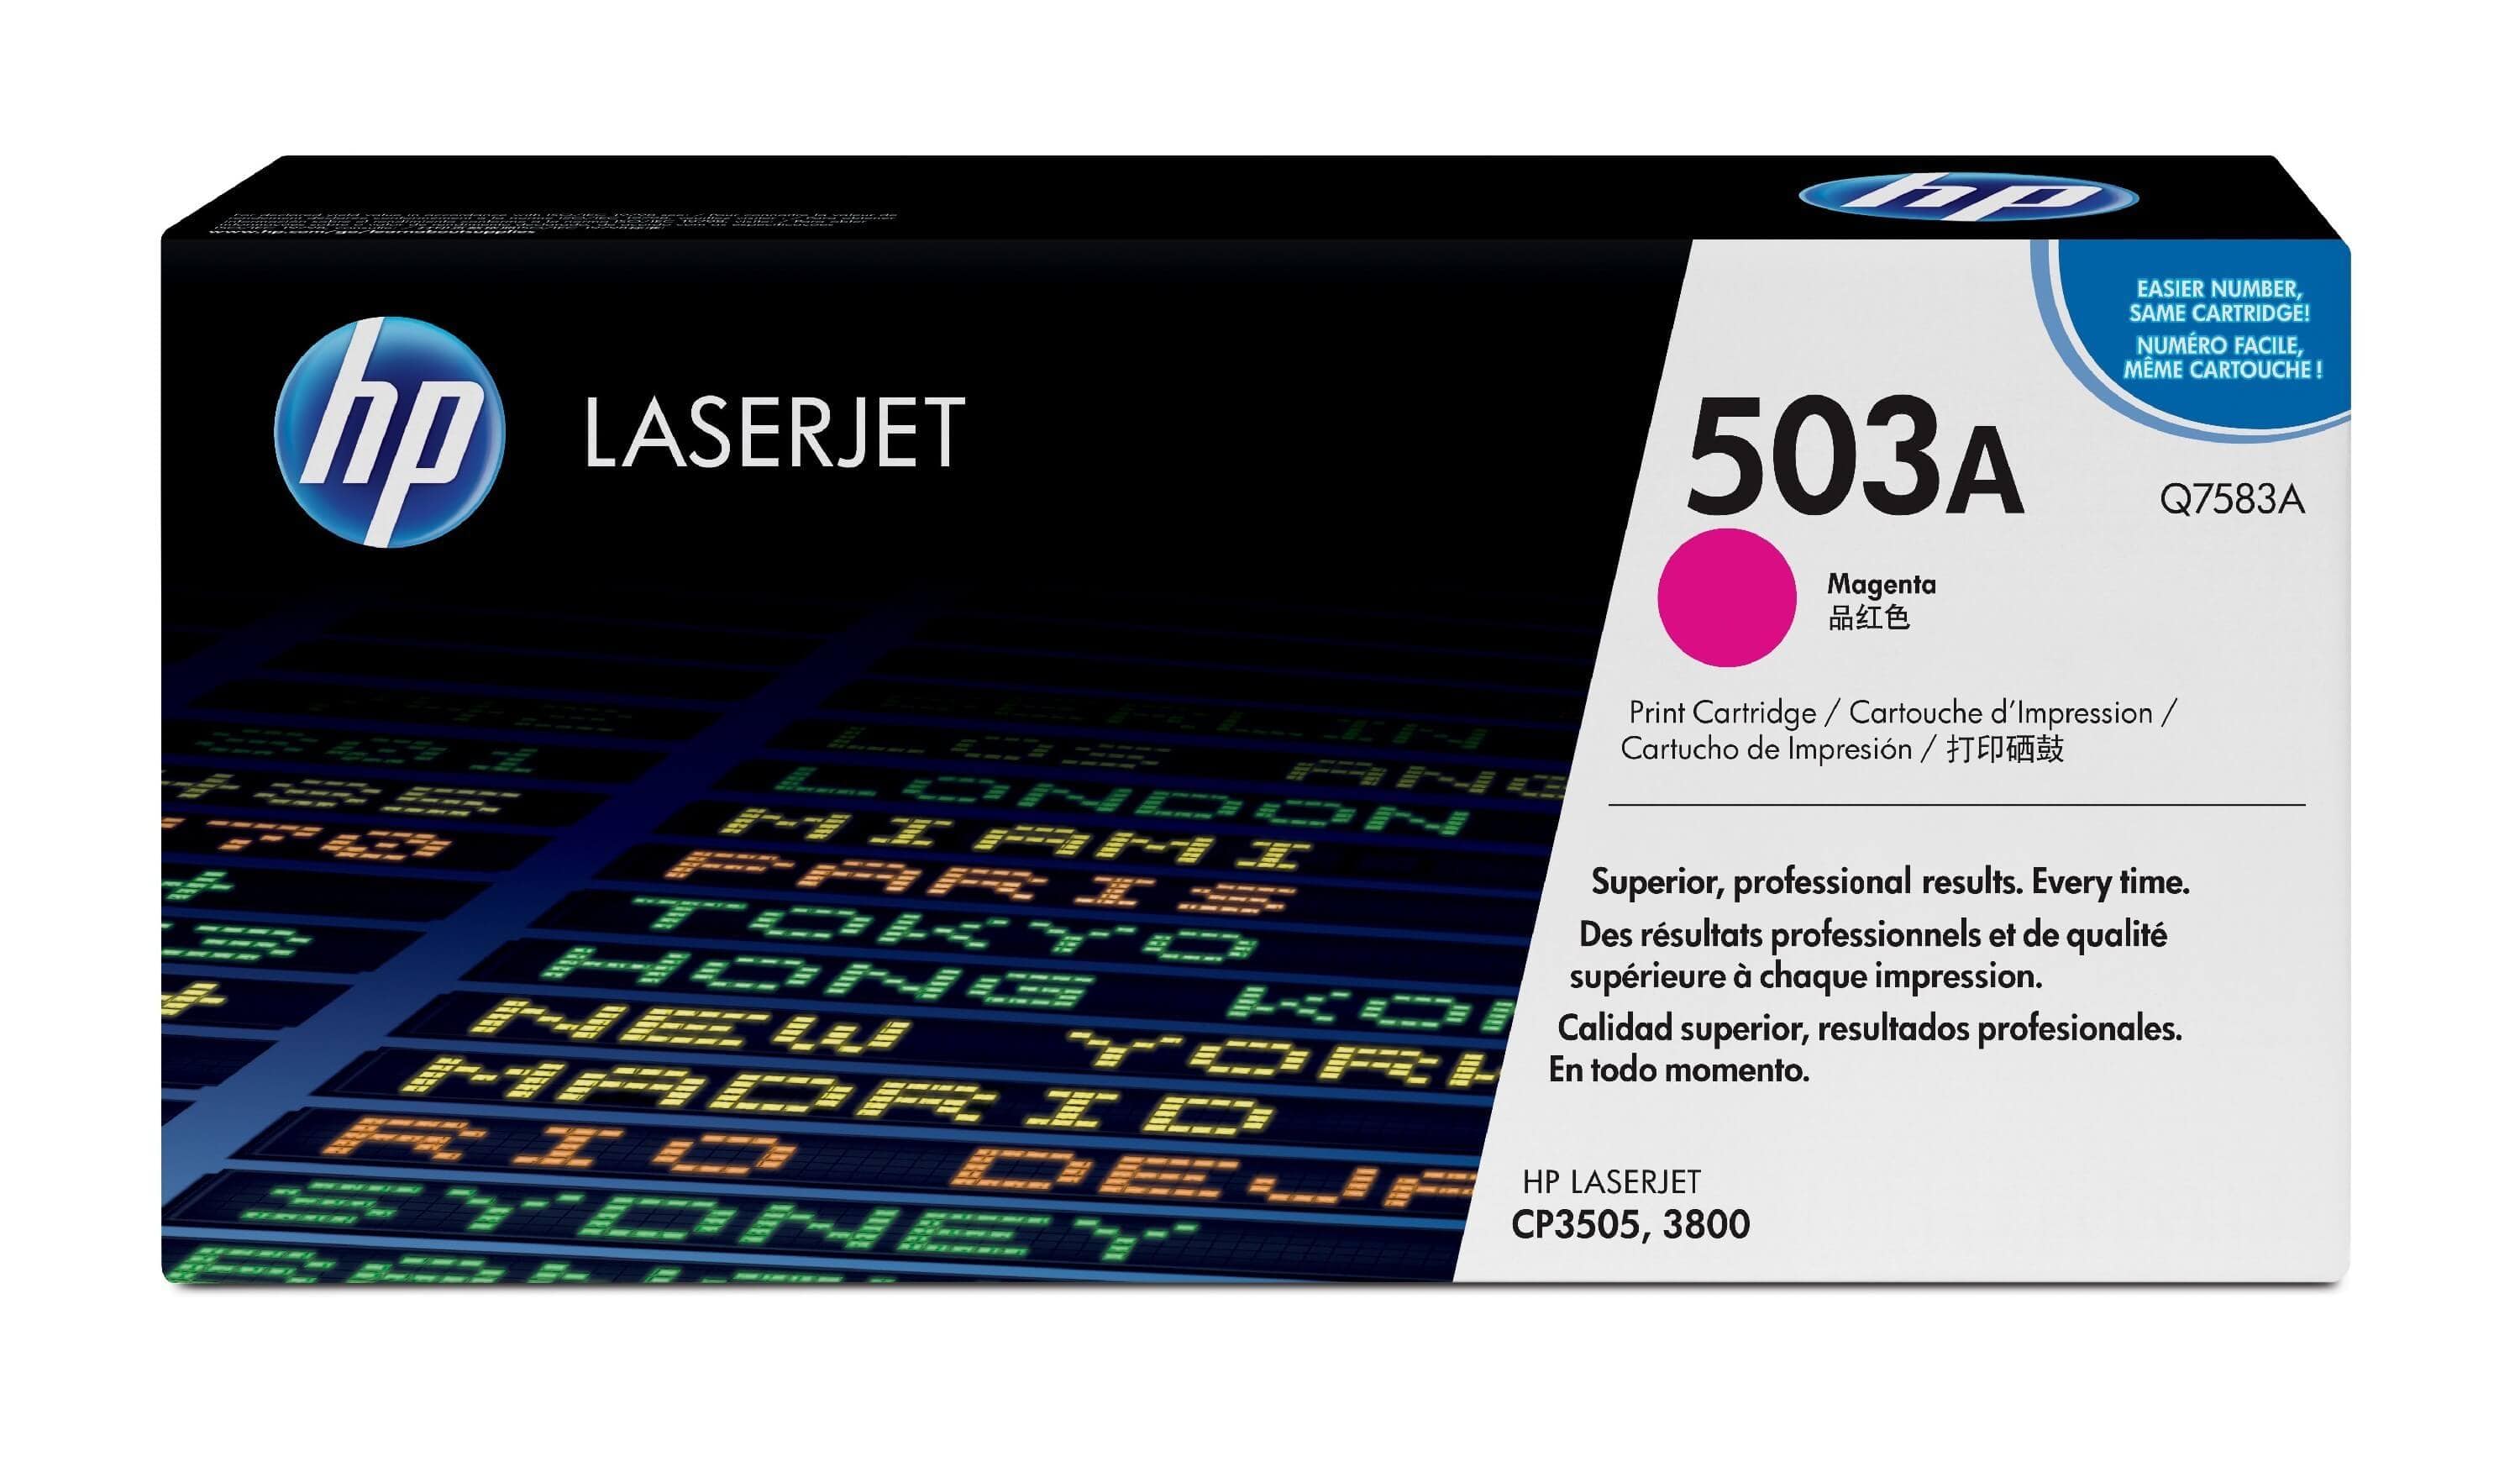 Original Toner HP Color LaserJet CP 3505 DN (Q7583A / 503A) Magenta